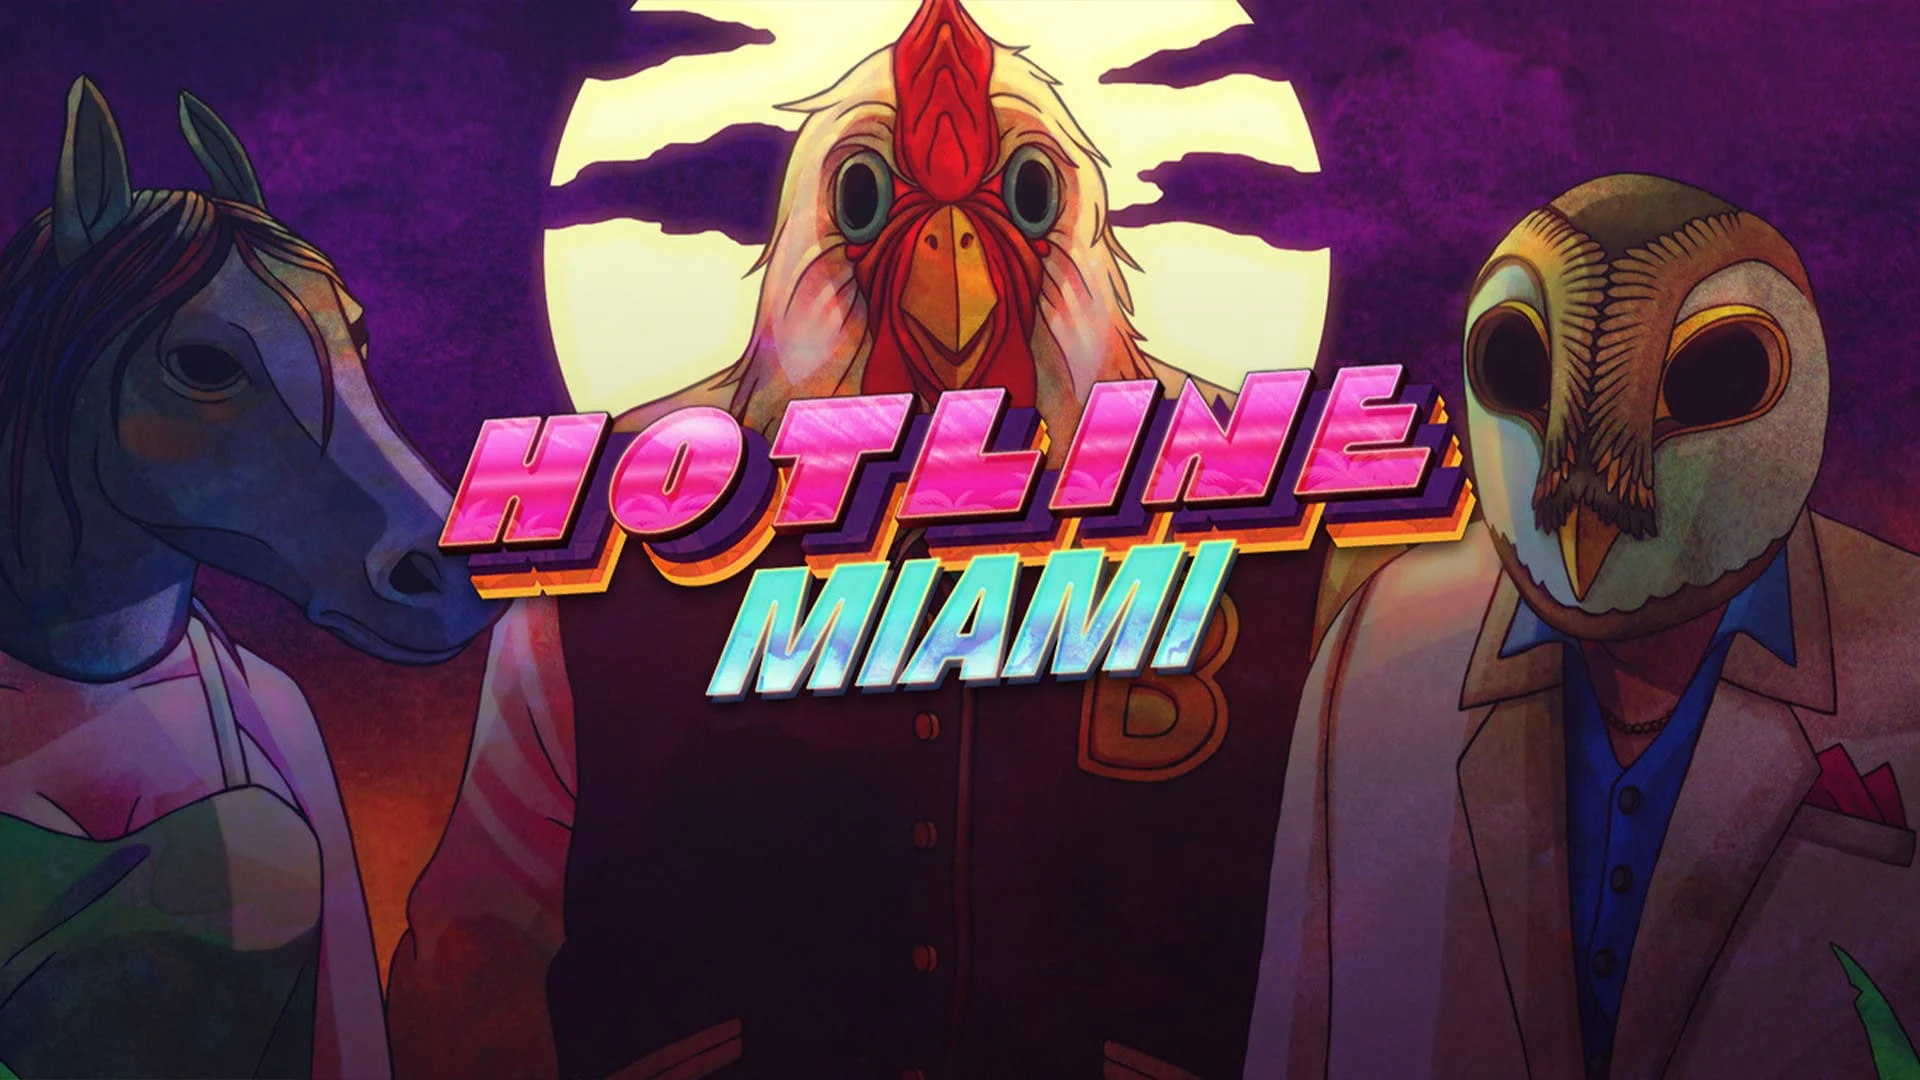 Hotline Miami 1 i 2 prawdopodobnie otrzymają natywne porty na PlayStation 5